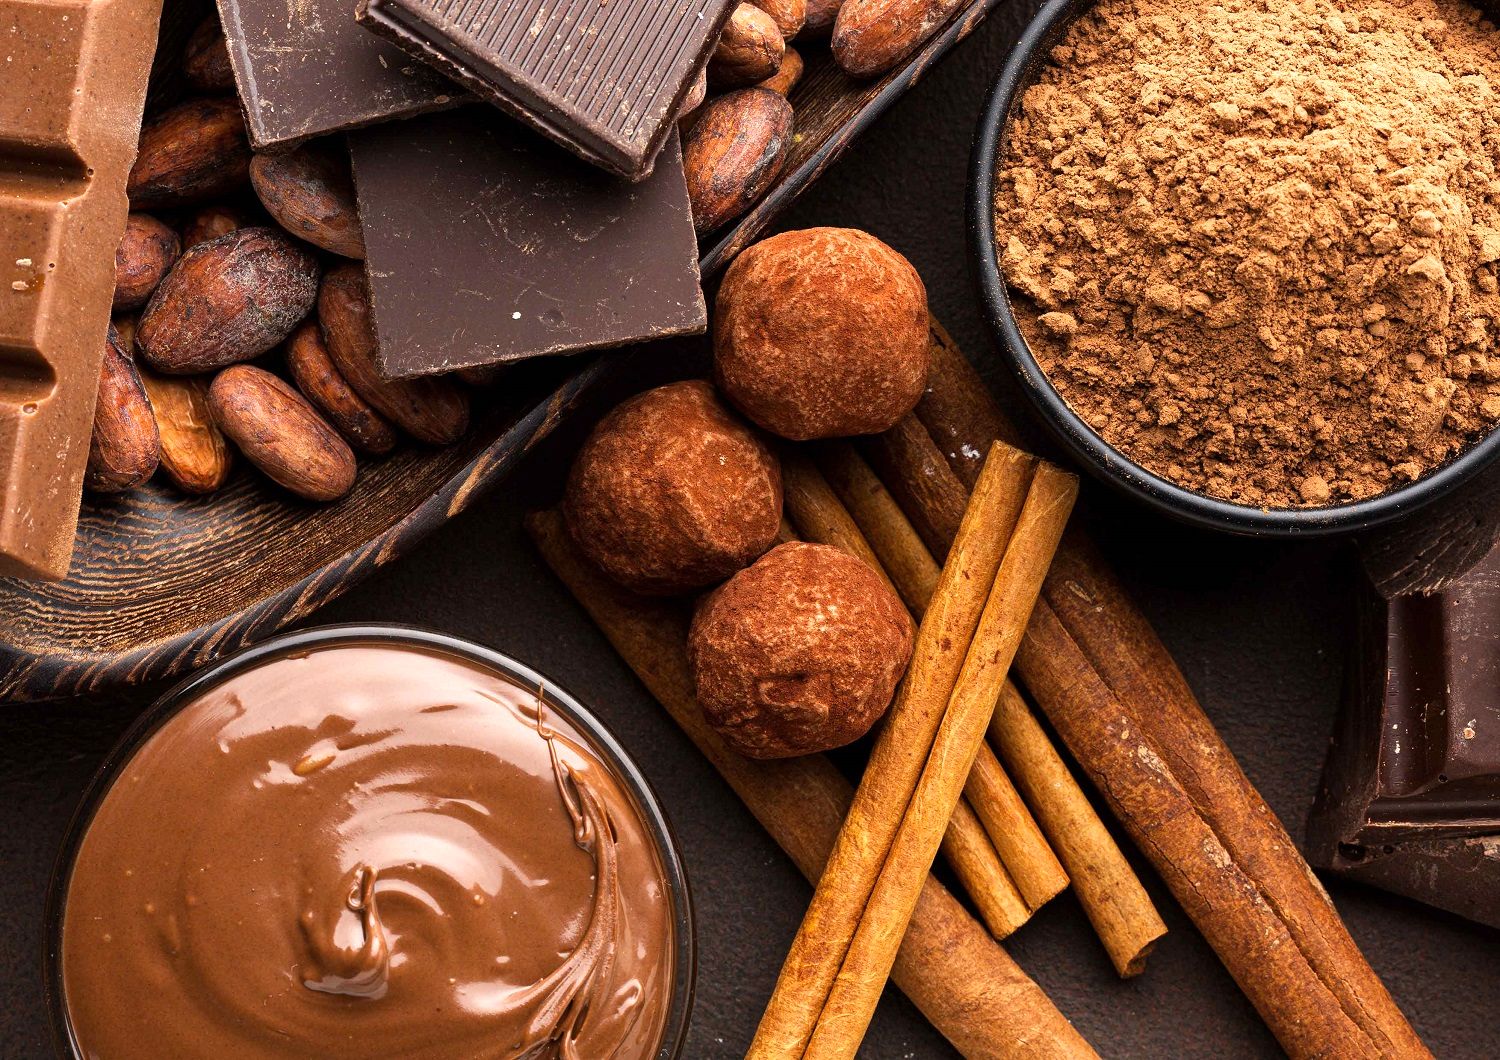 رشد جنون آمیز قیمت کاکائو در جهان / شکلات از طلا سبقت گرفت!